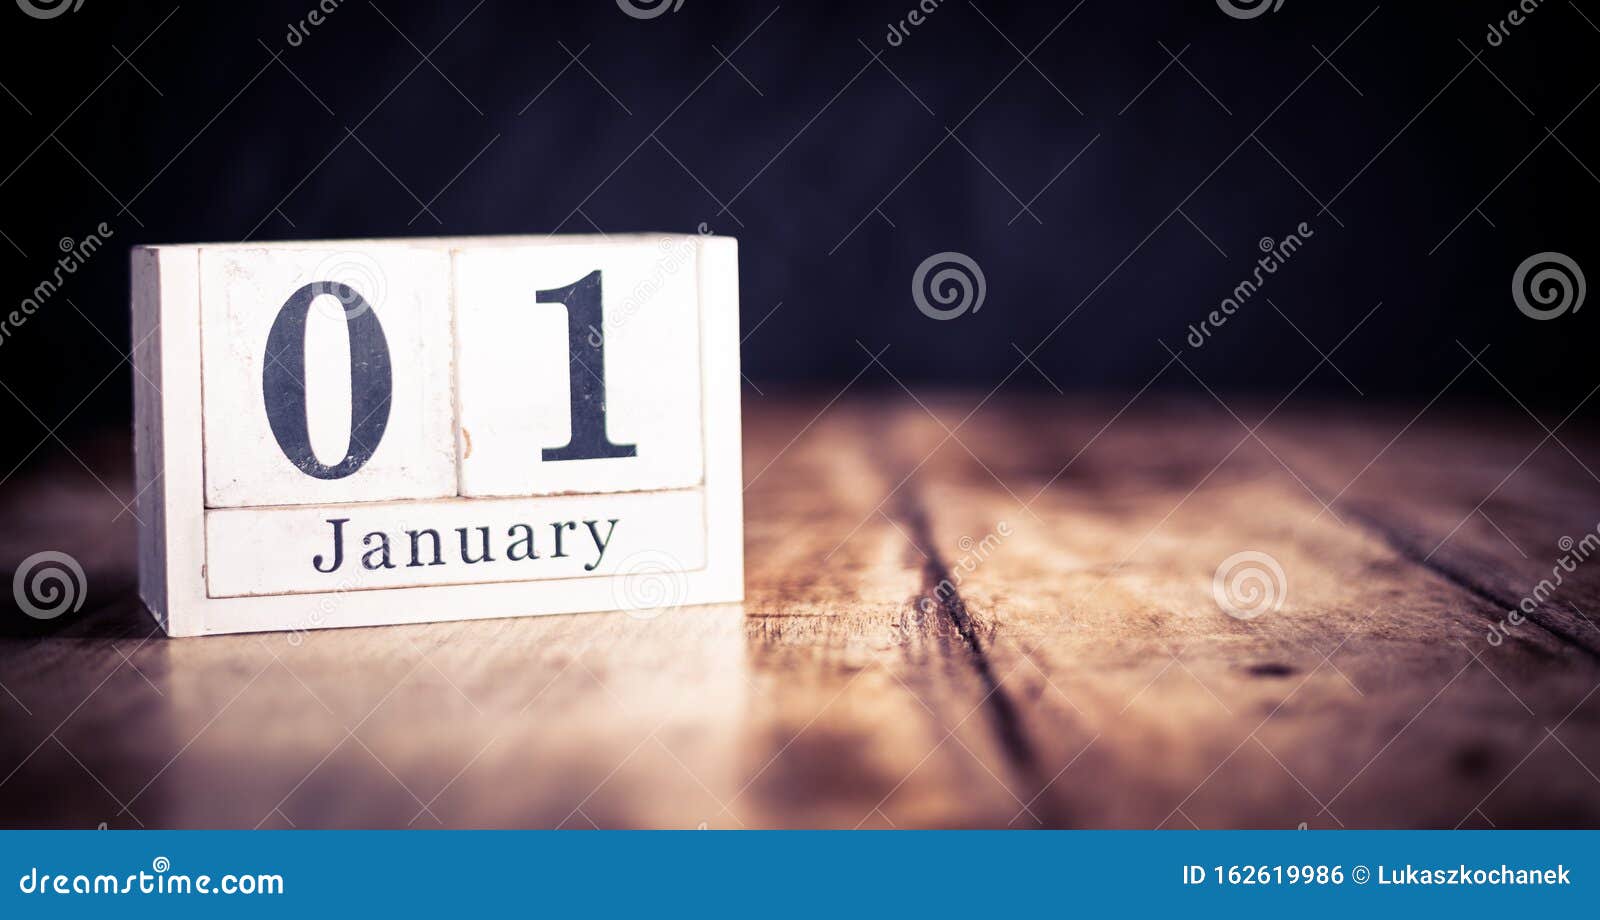 День рождения 29 января. 1 January. The first of January or January first. January 1st February 2nd.